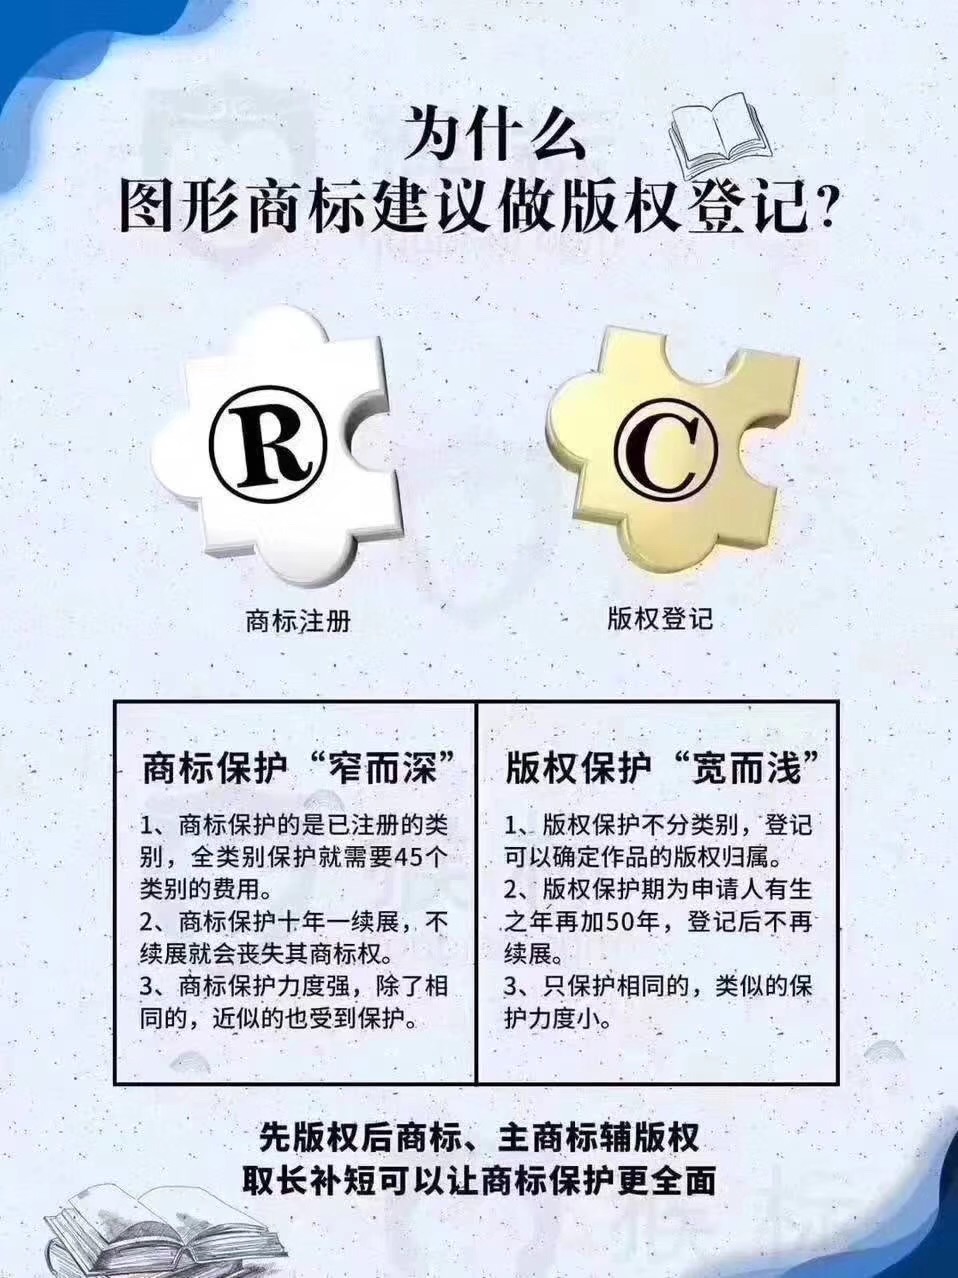 重慶中國商標網商標查詢系統